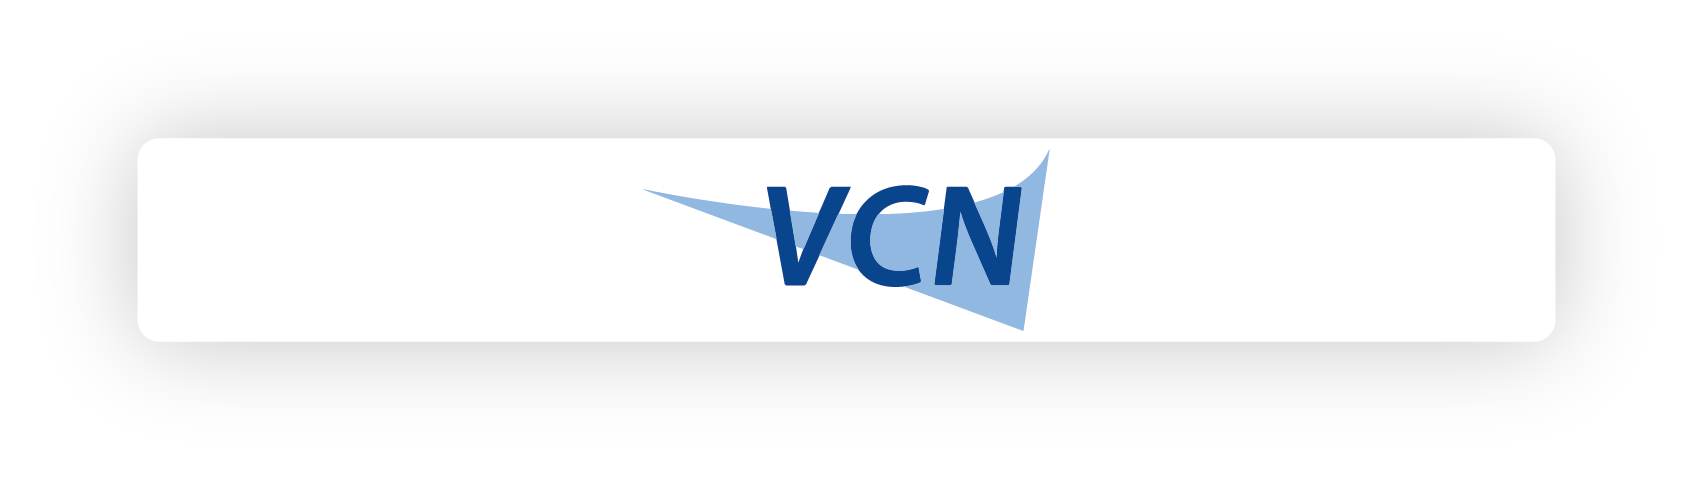 VCN koppeling